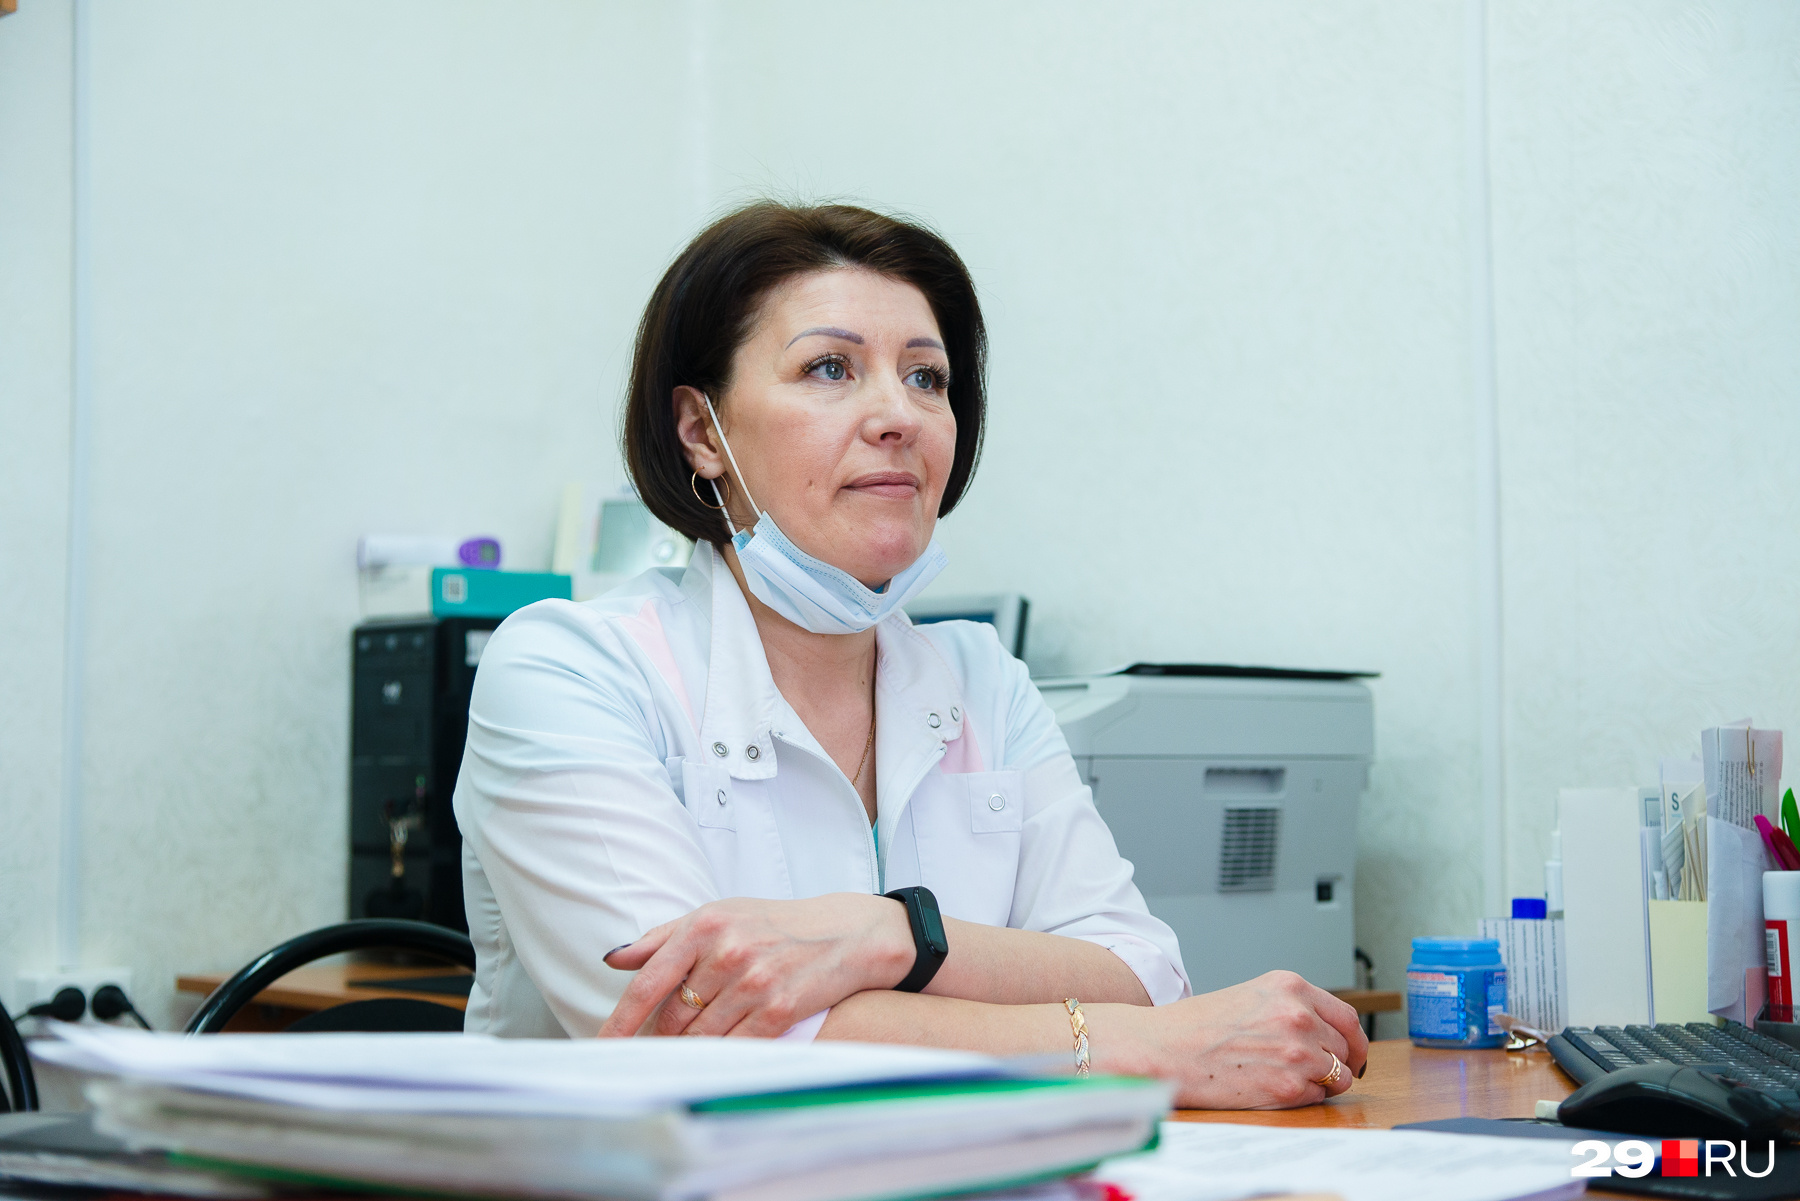 Надежда Николаевна рассказала нам о том, что жителям сейчас неудобно проходить серьезные медобследования, так как порой трудно добраться до больницы в Луковецком или Холмогорах